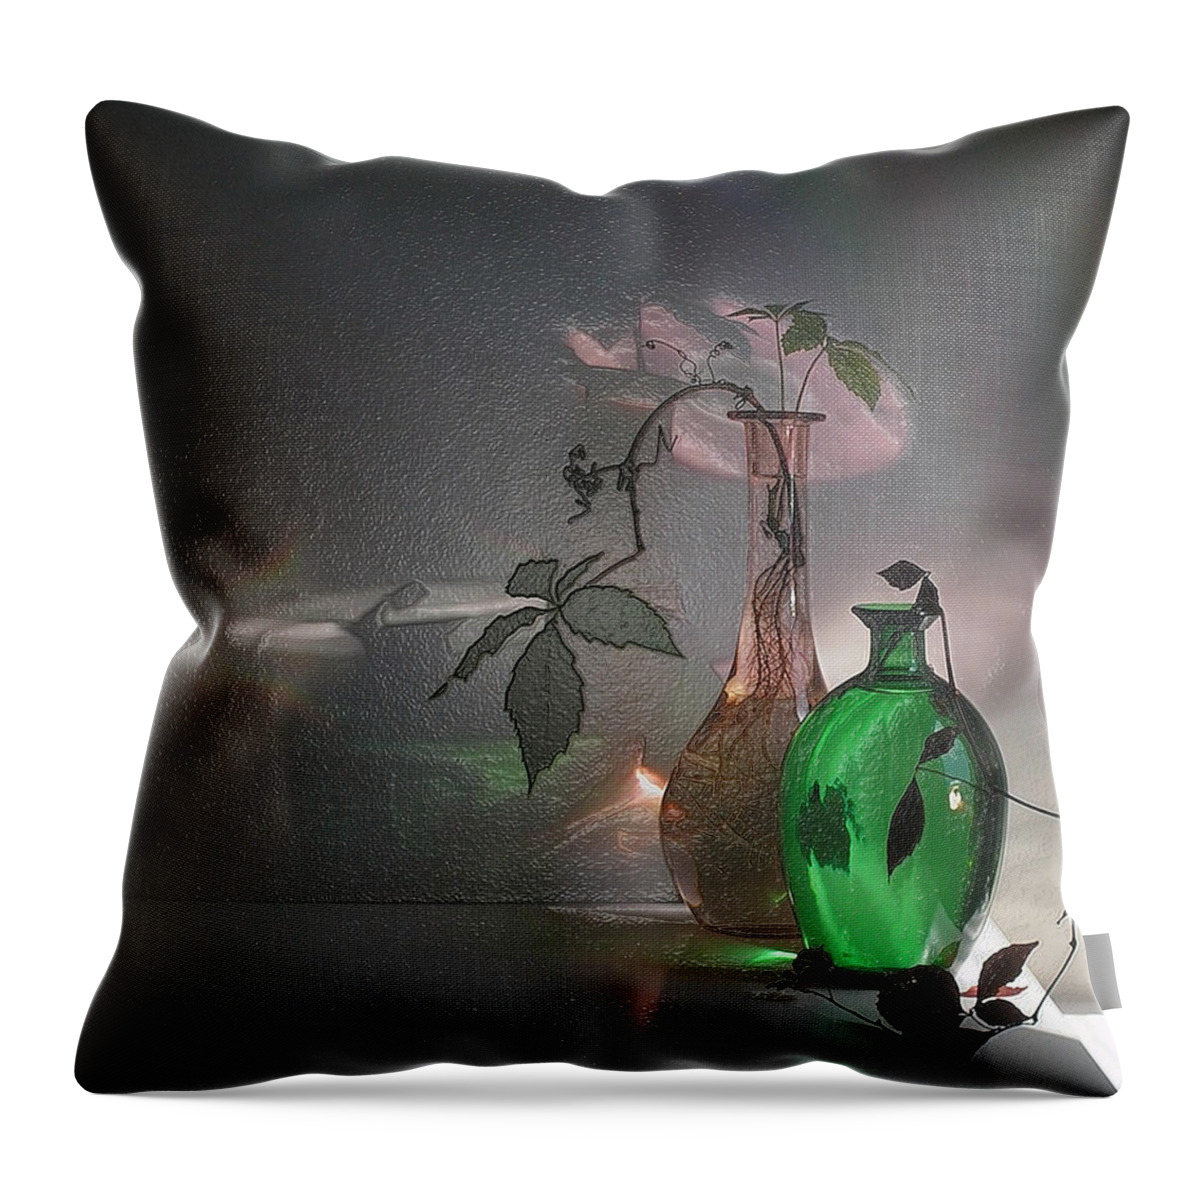 3d Modern Art Still Life Throw Pillow featuring the digital art Green Touch by Scott Mendell